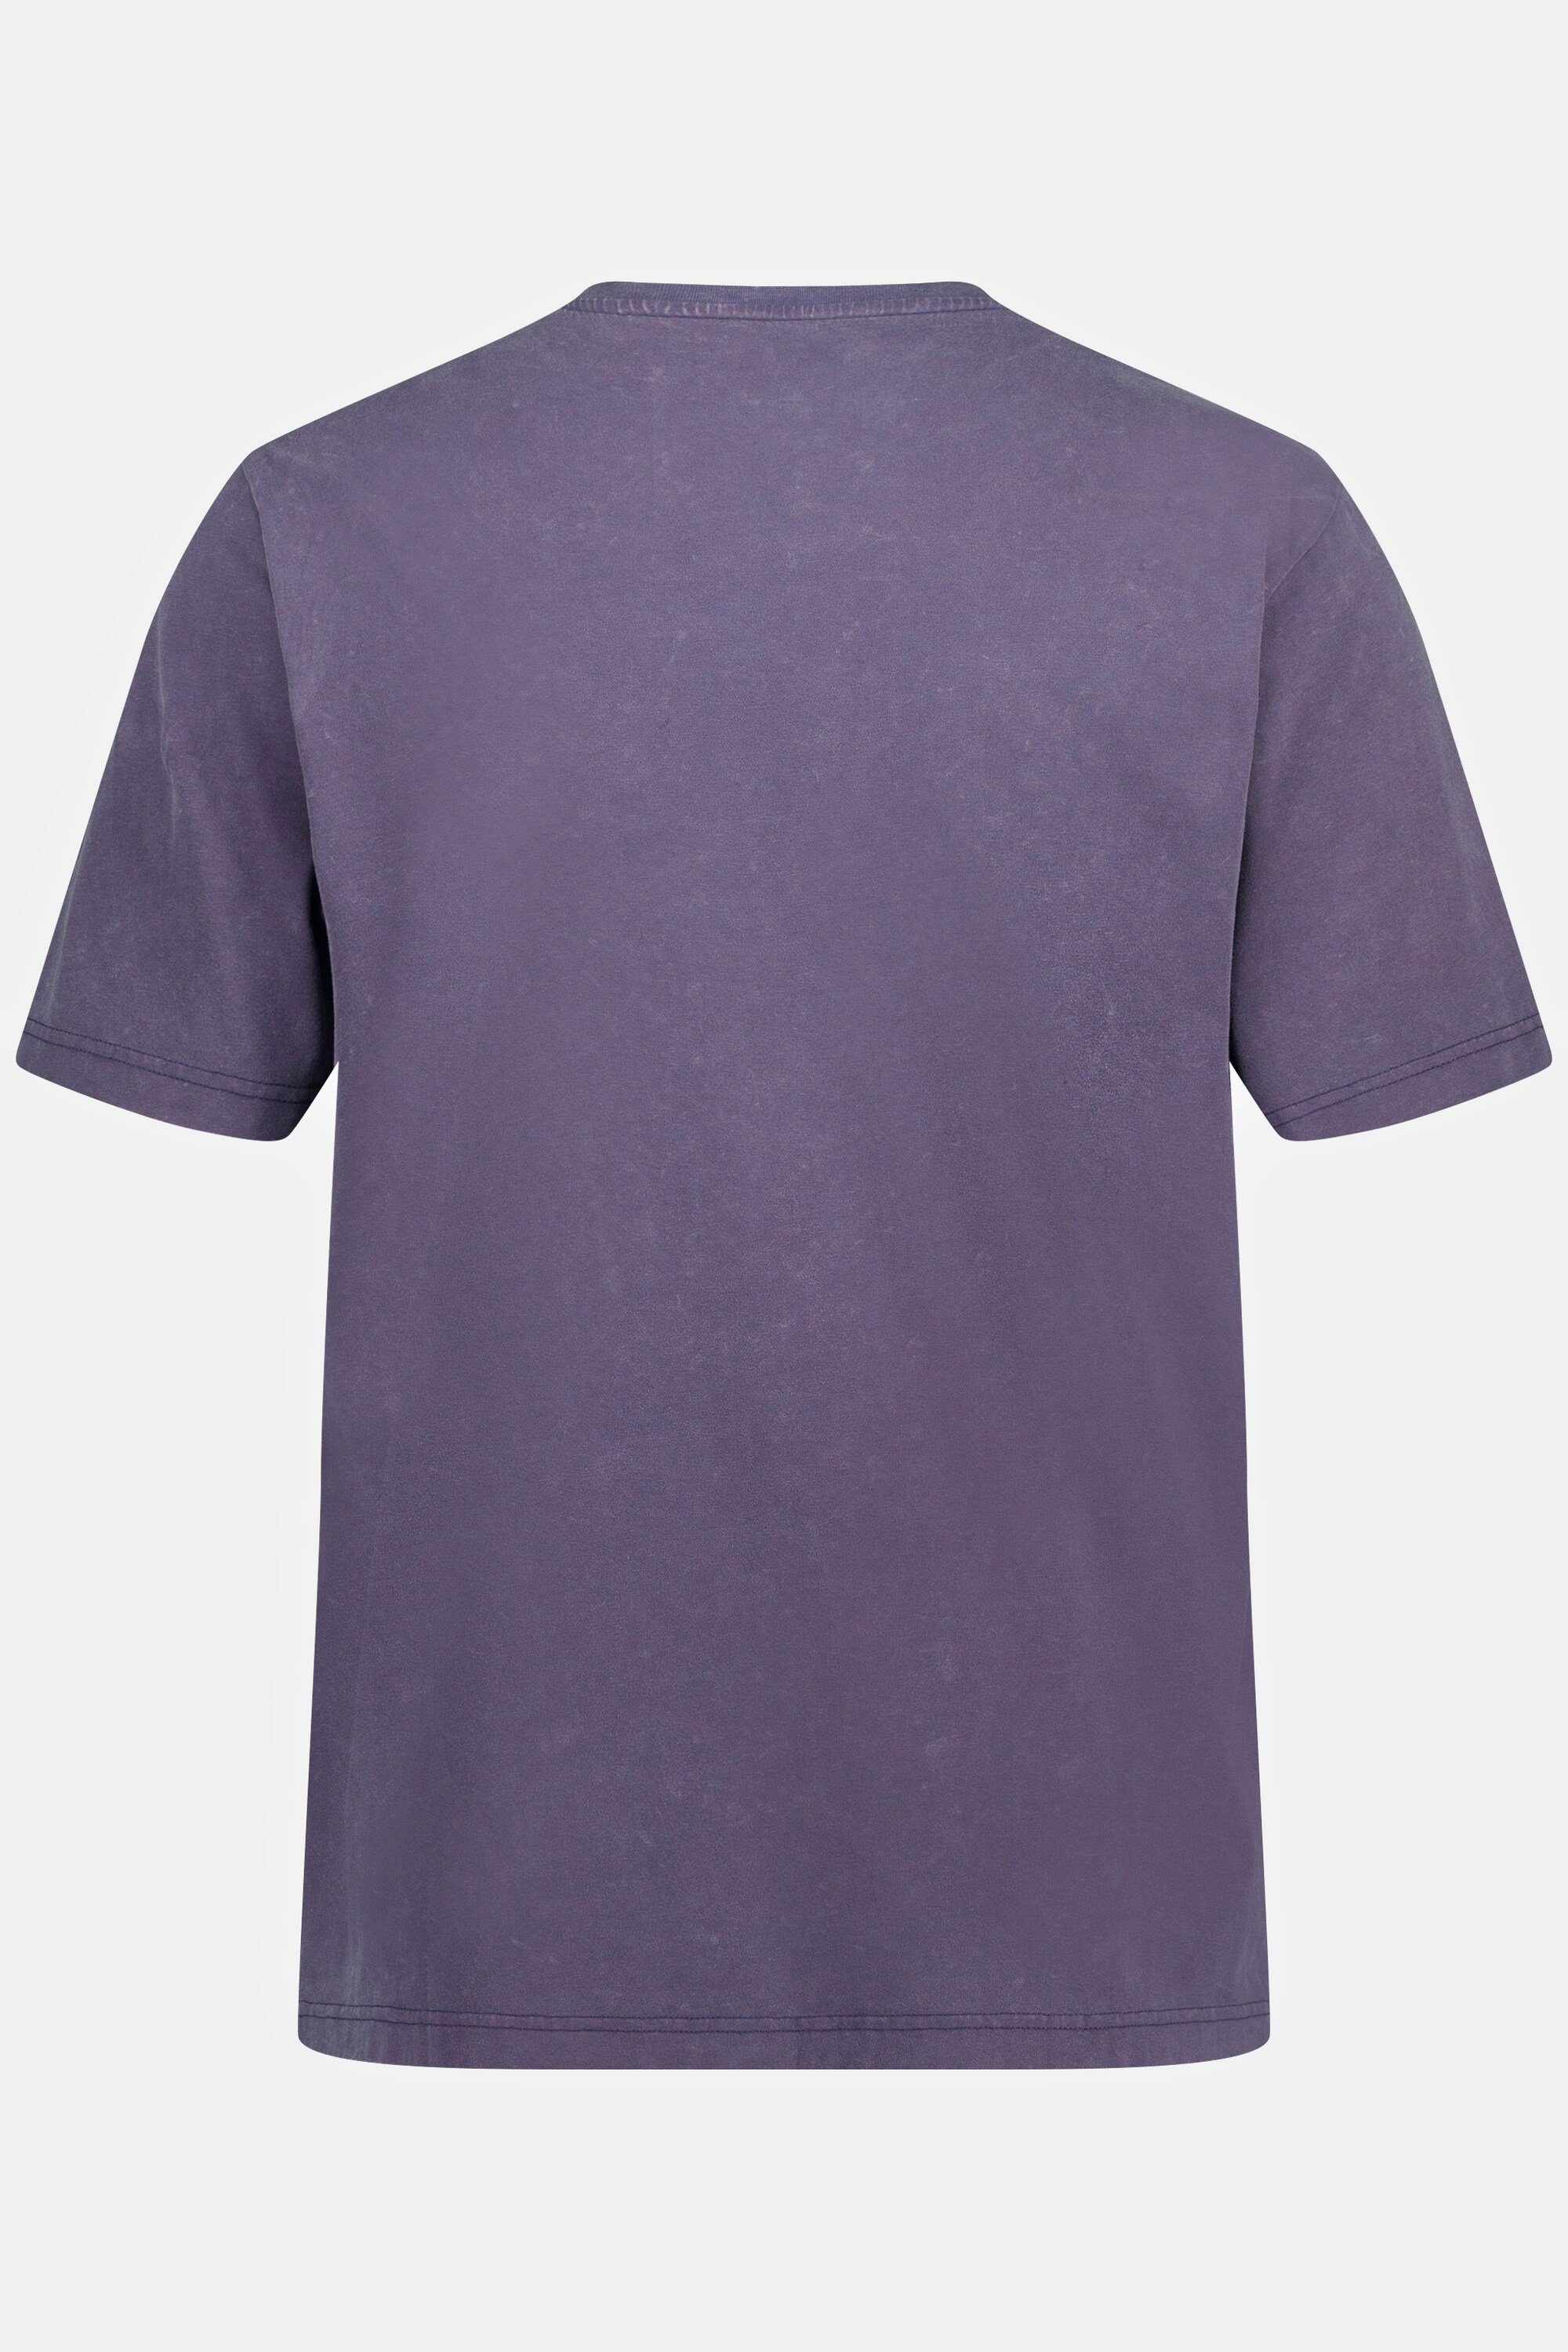 T-Shirt washed 8 T-Shirt Halbarm STHUGE acid STHUGE bis XL